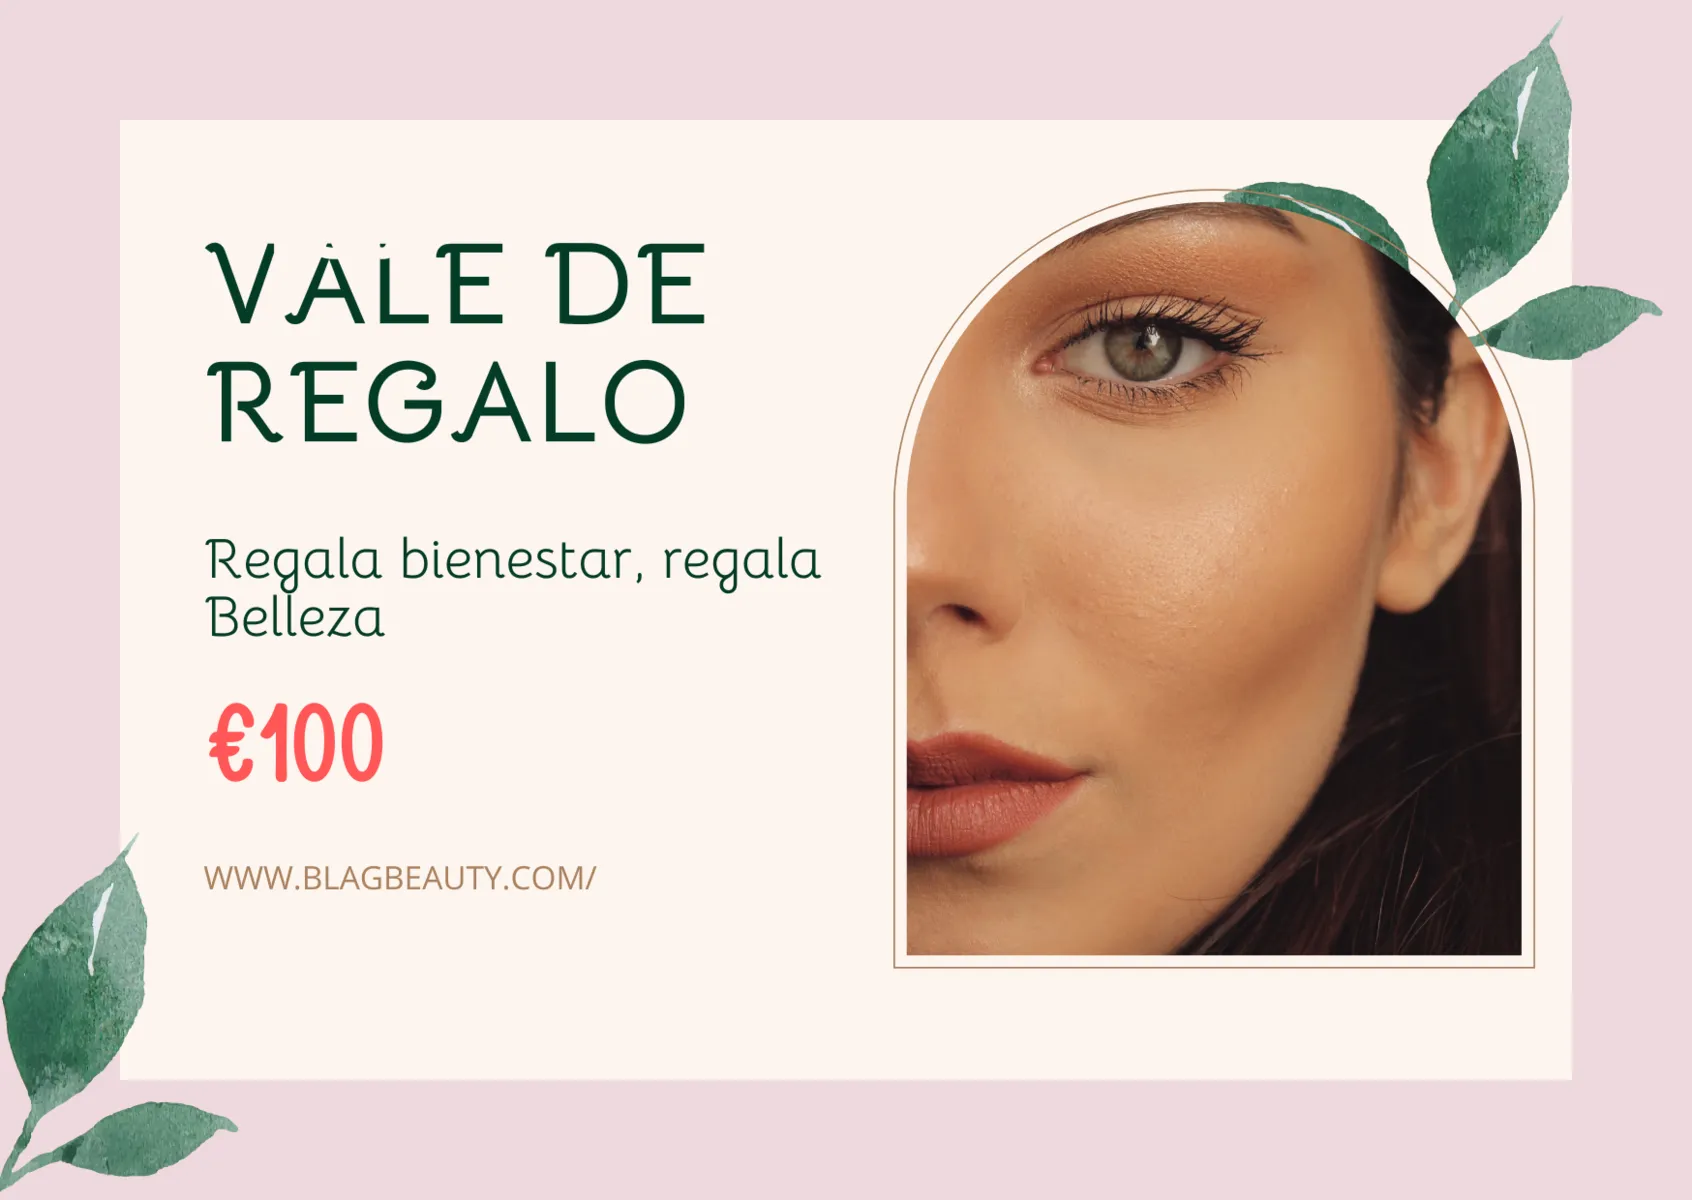 VALE DE REGALO - €100